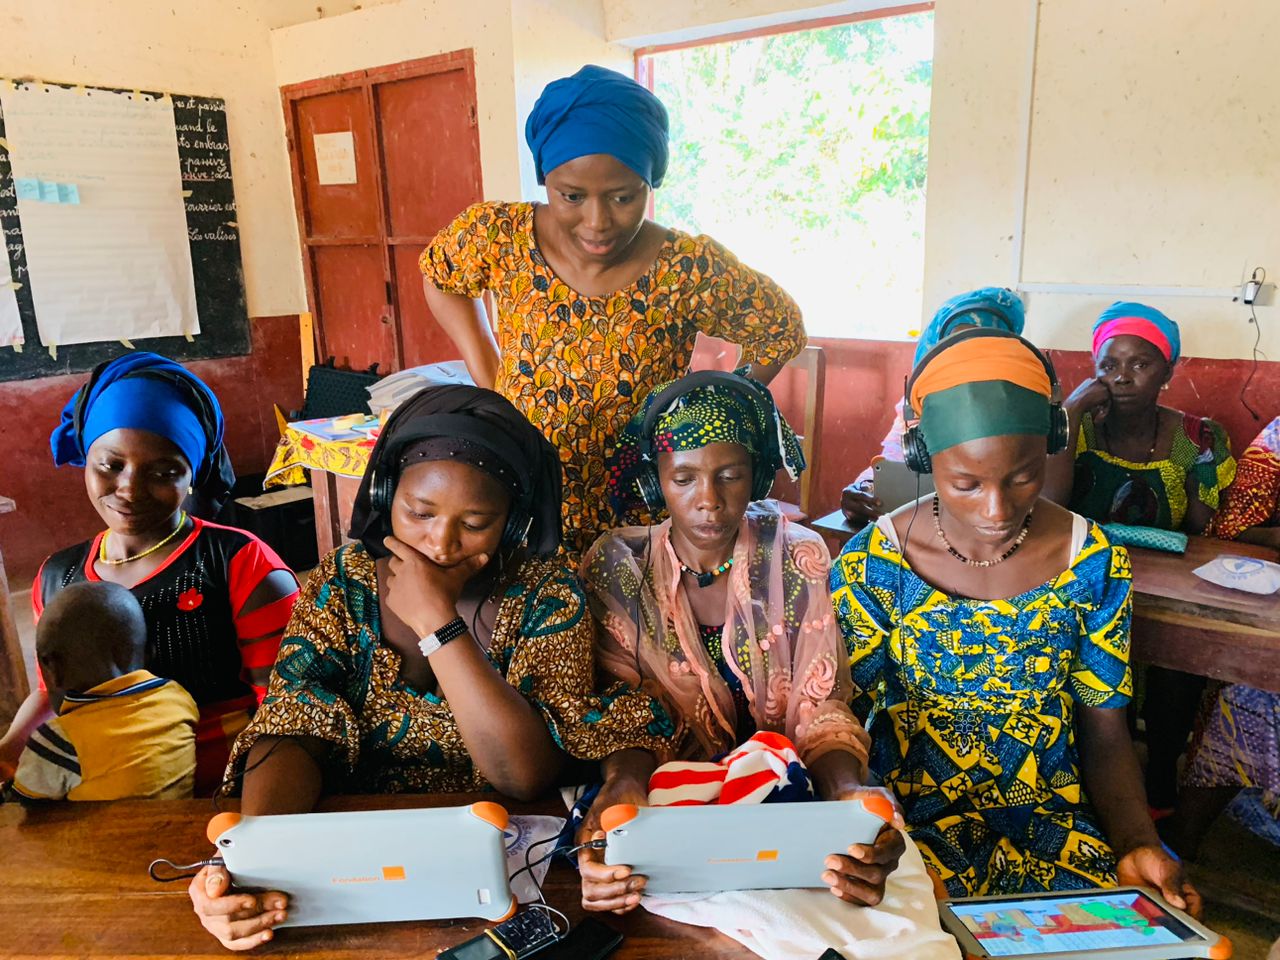      Micro-projet « Femmes et Arbre à Palabres 2.0 : Action Education œuvre pour l’éducation des personnes vulnérables et marginalisées en Guinée